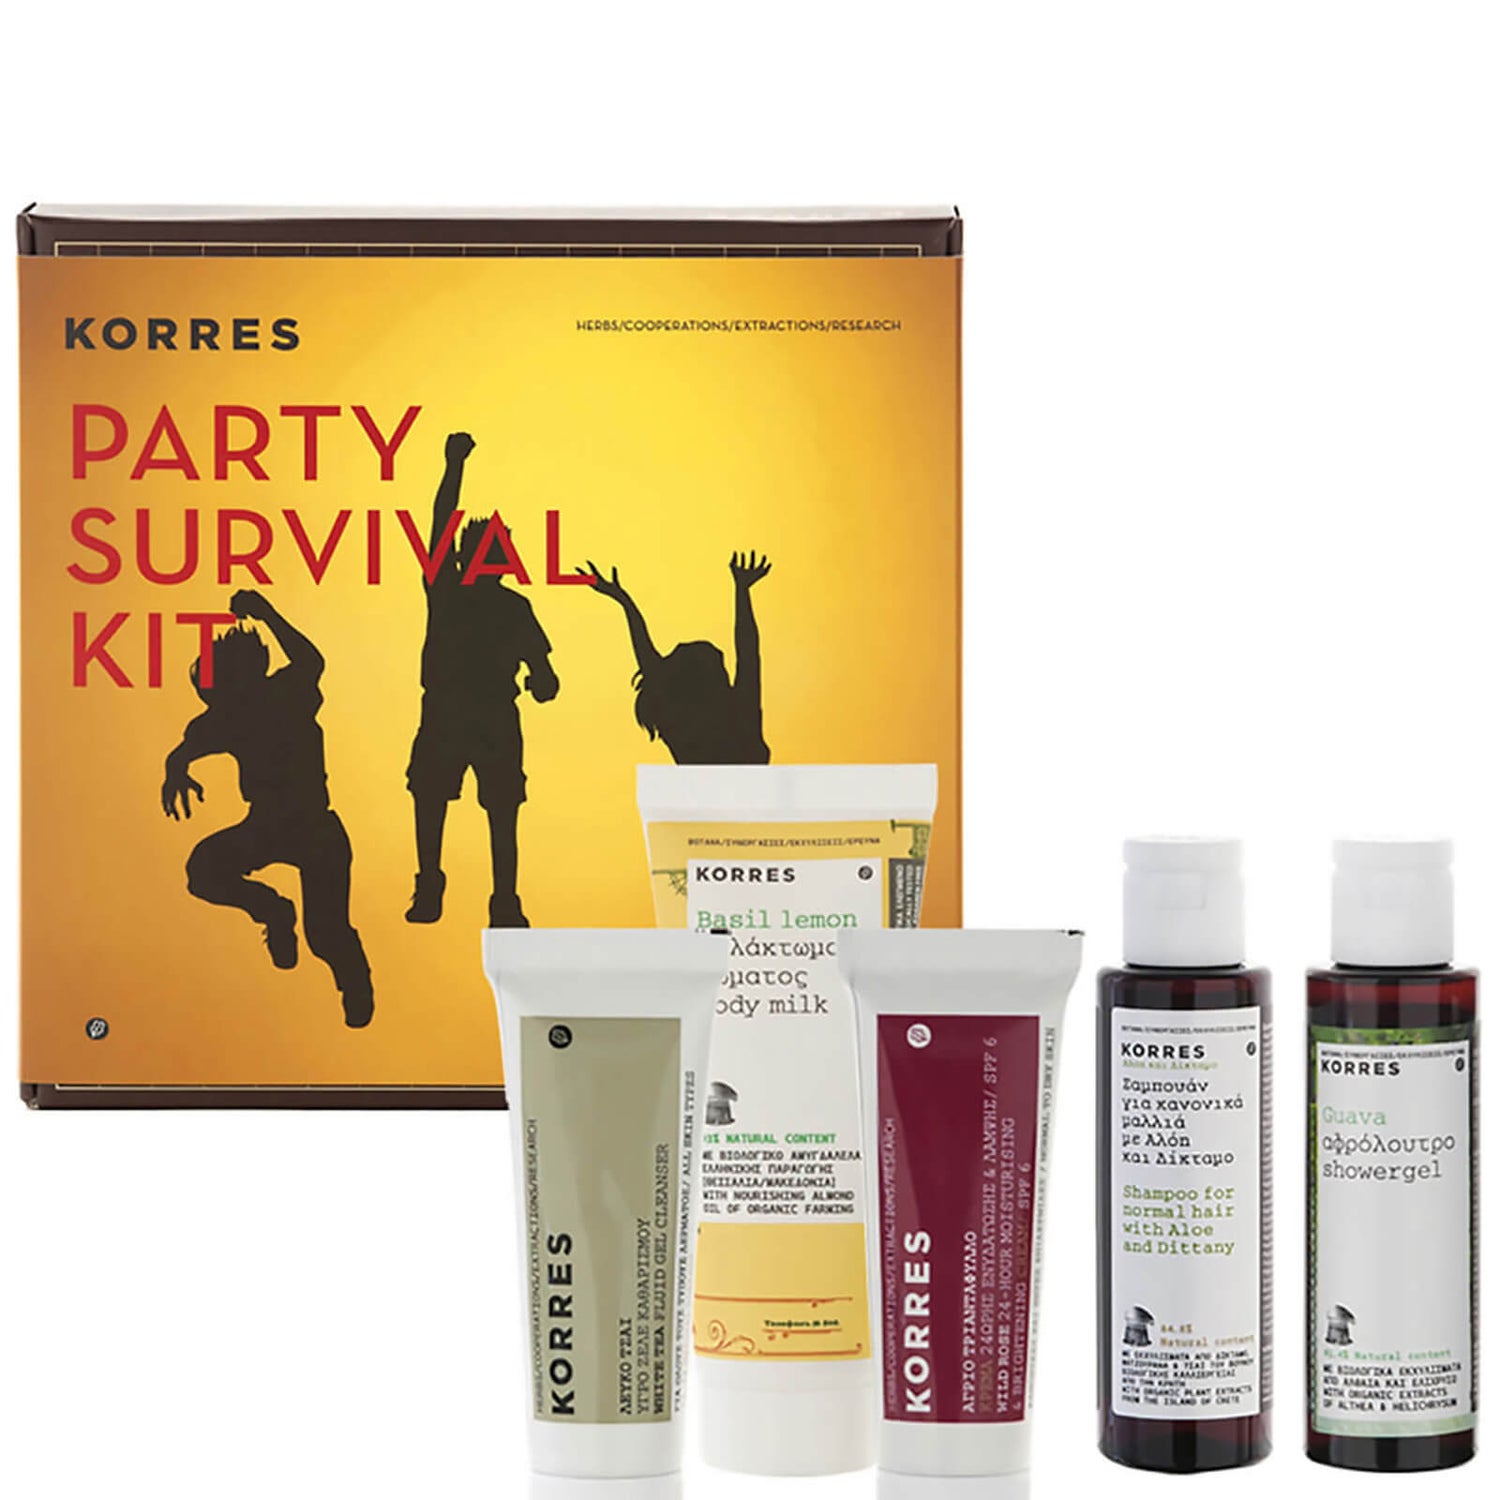 Kit de supervivencia KORRES (5 productos)